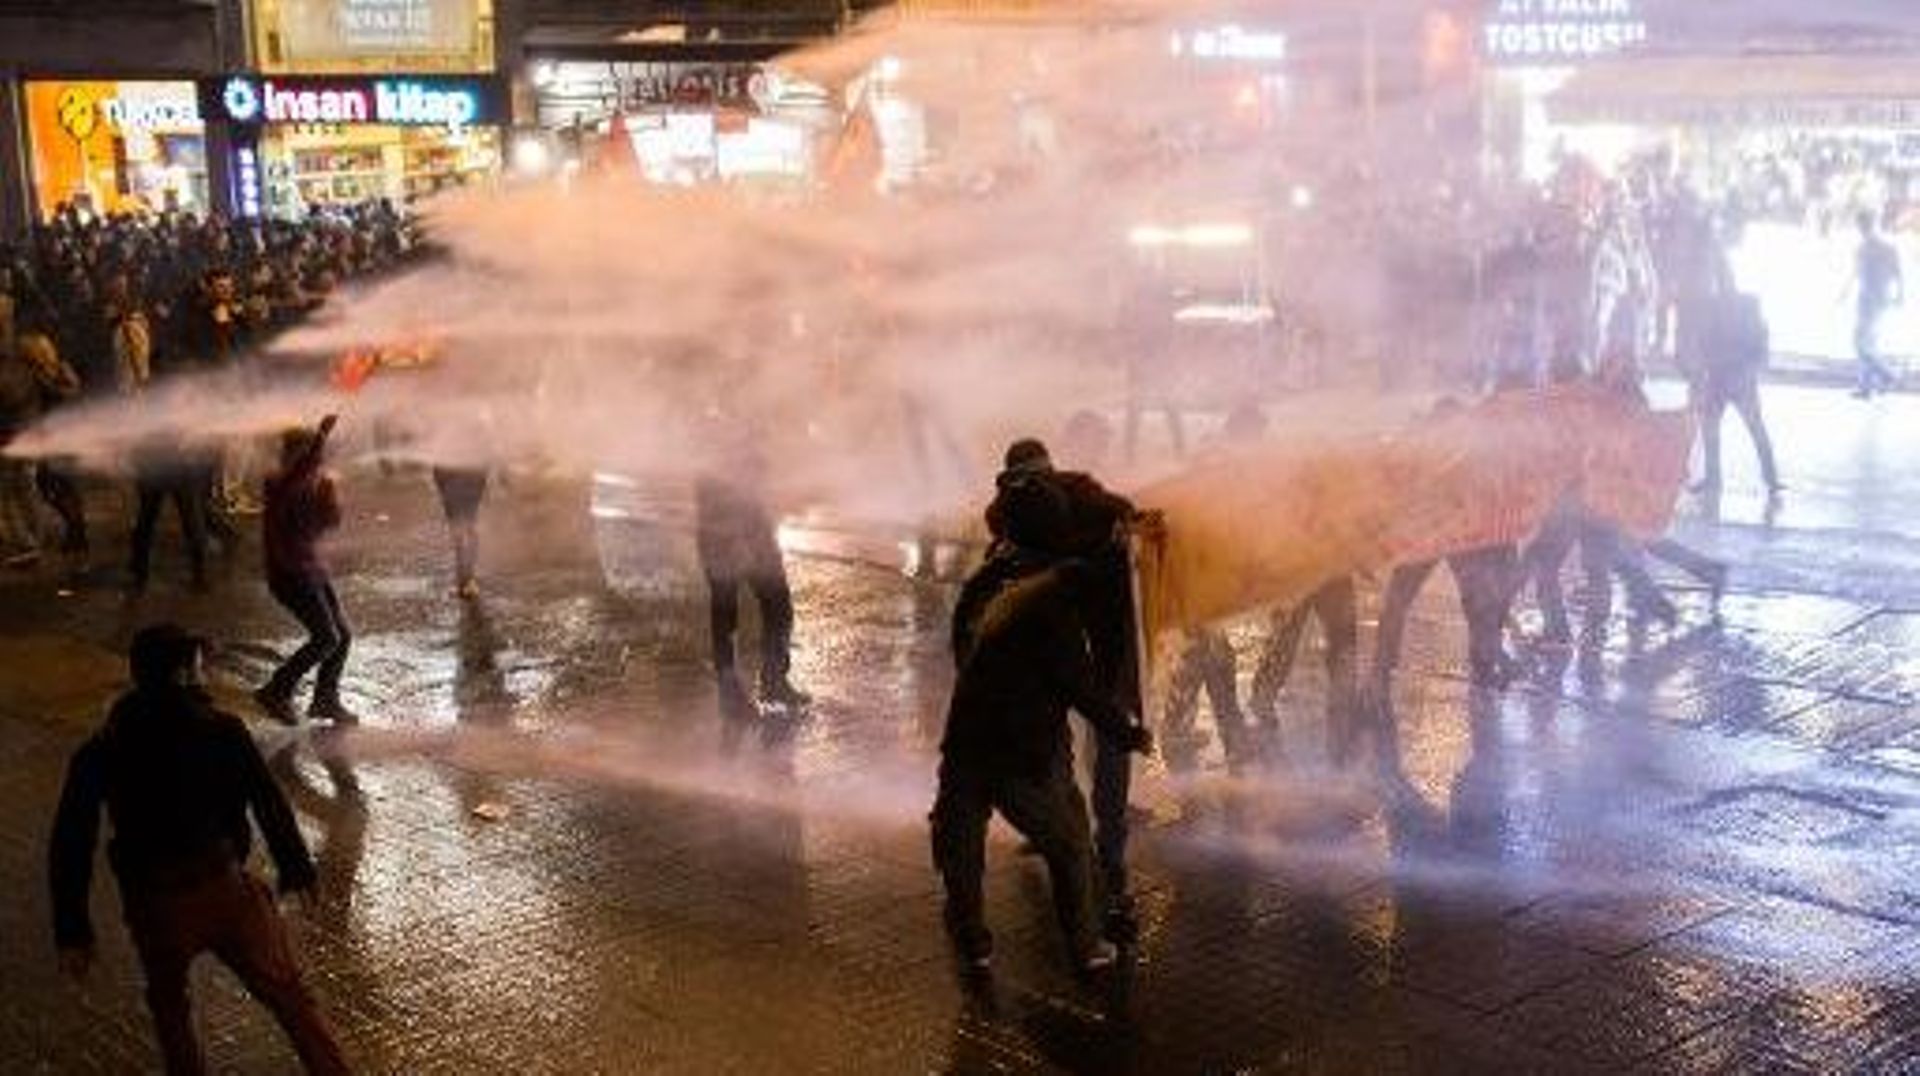 La police utilise un canon à eau contre des personnes manifestant contre la nouvelle loi sur internet, le 18 janvier 2014 à Istanbul